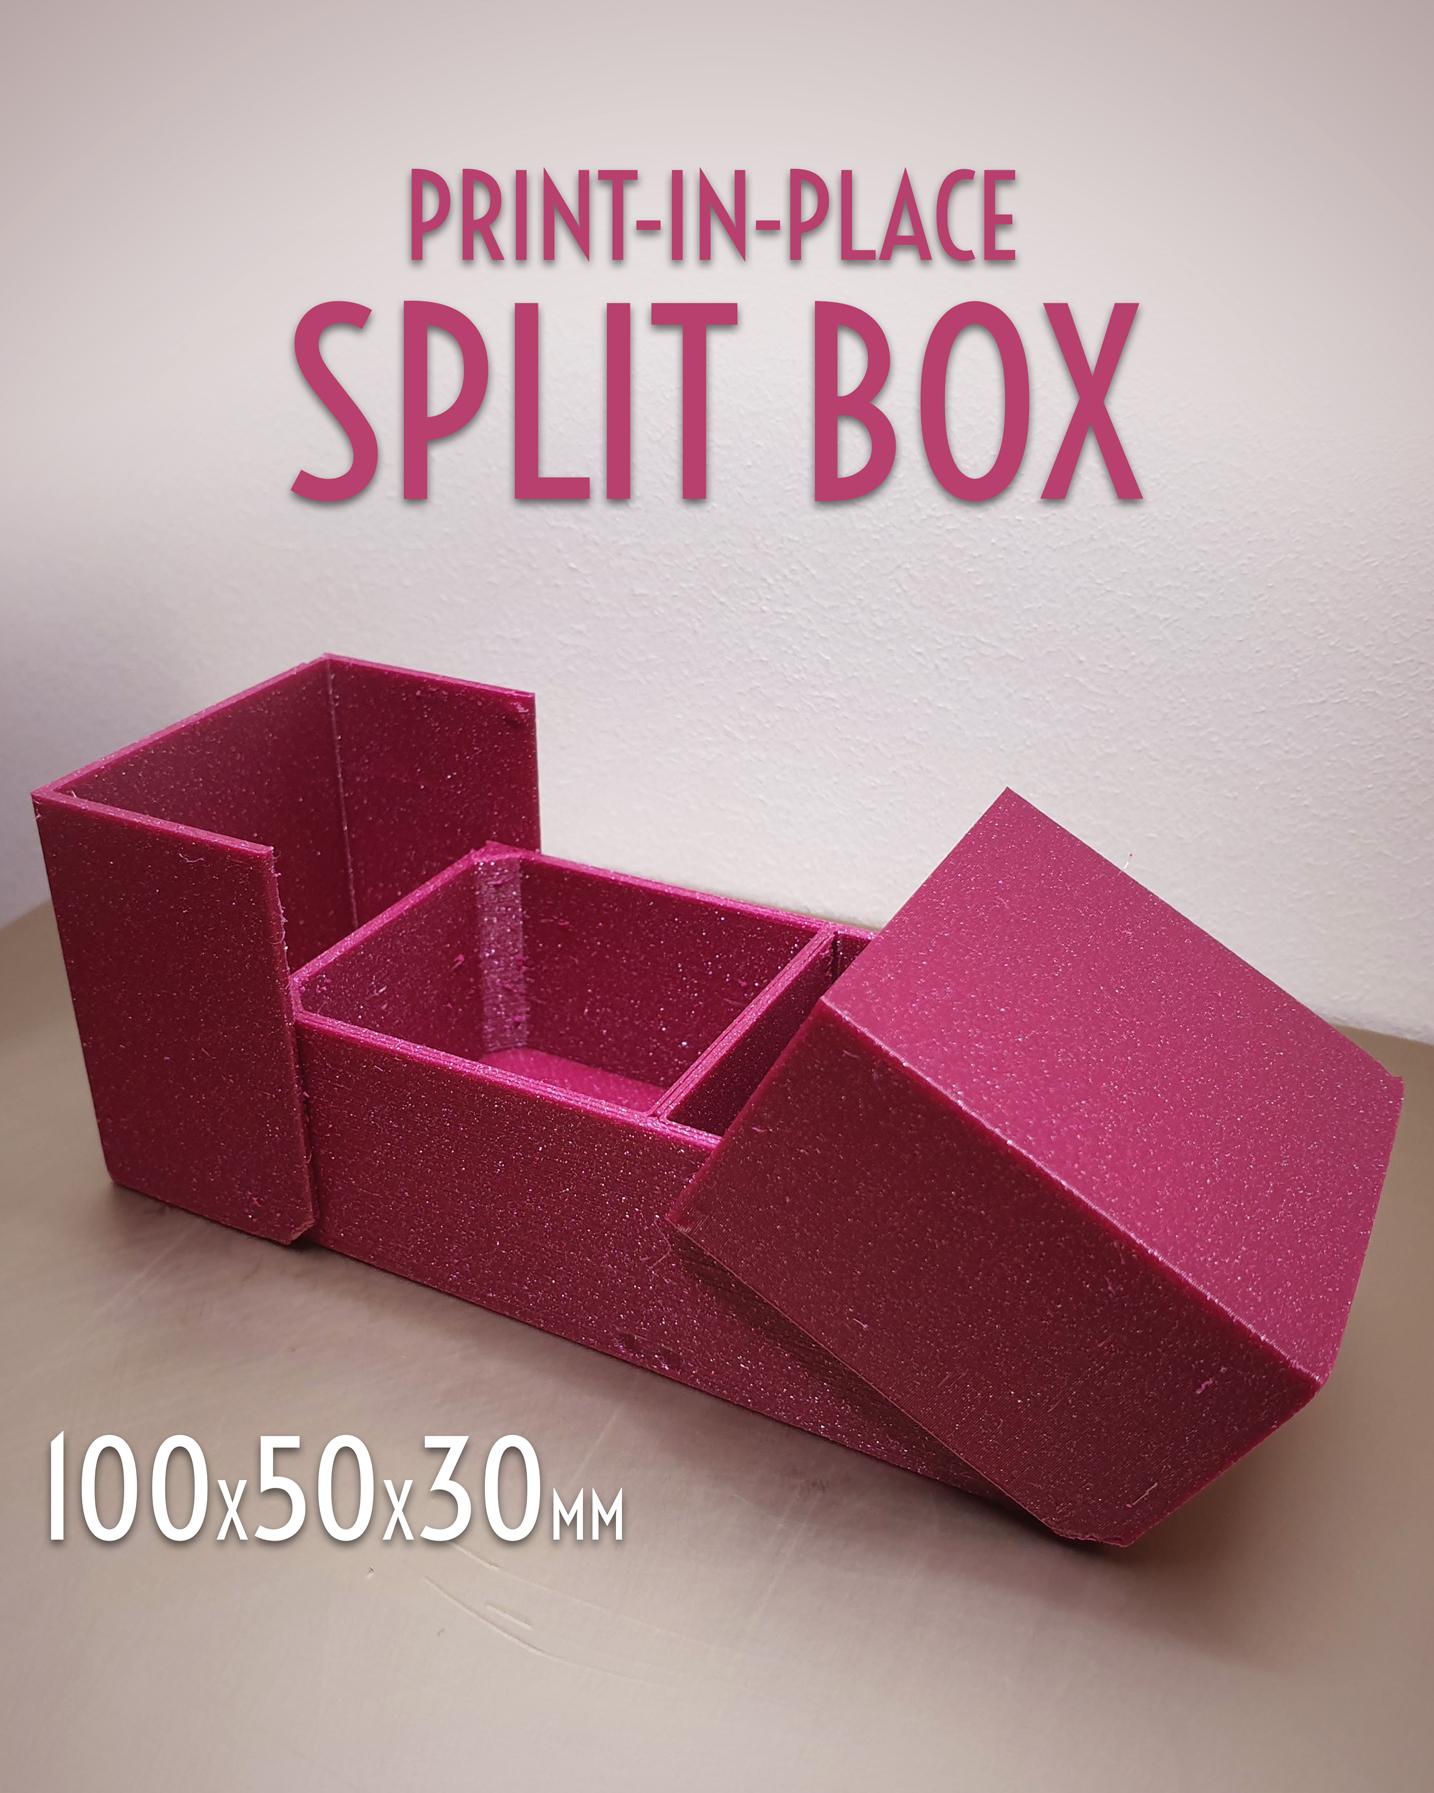 Print-in-Place Split Box 100x50x30mm 3d model